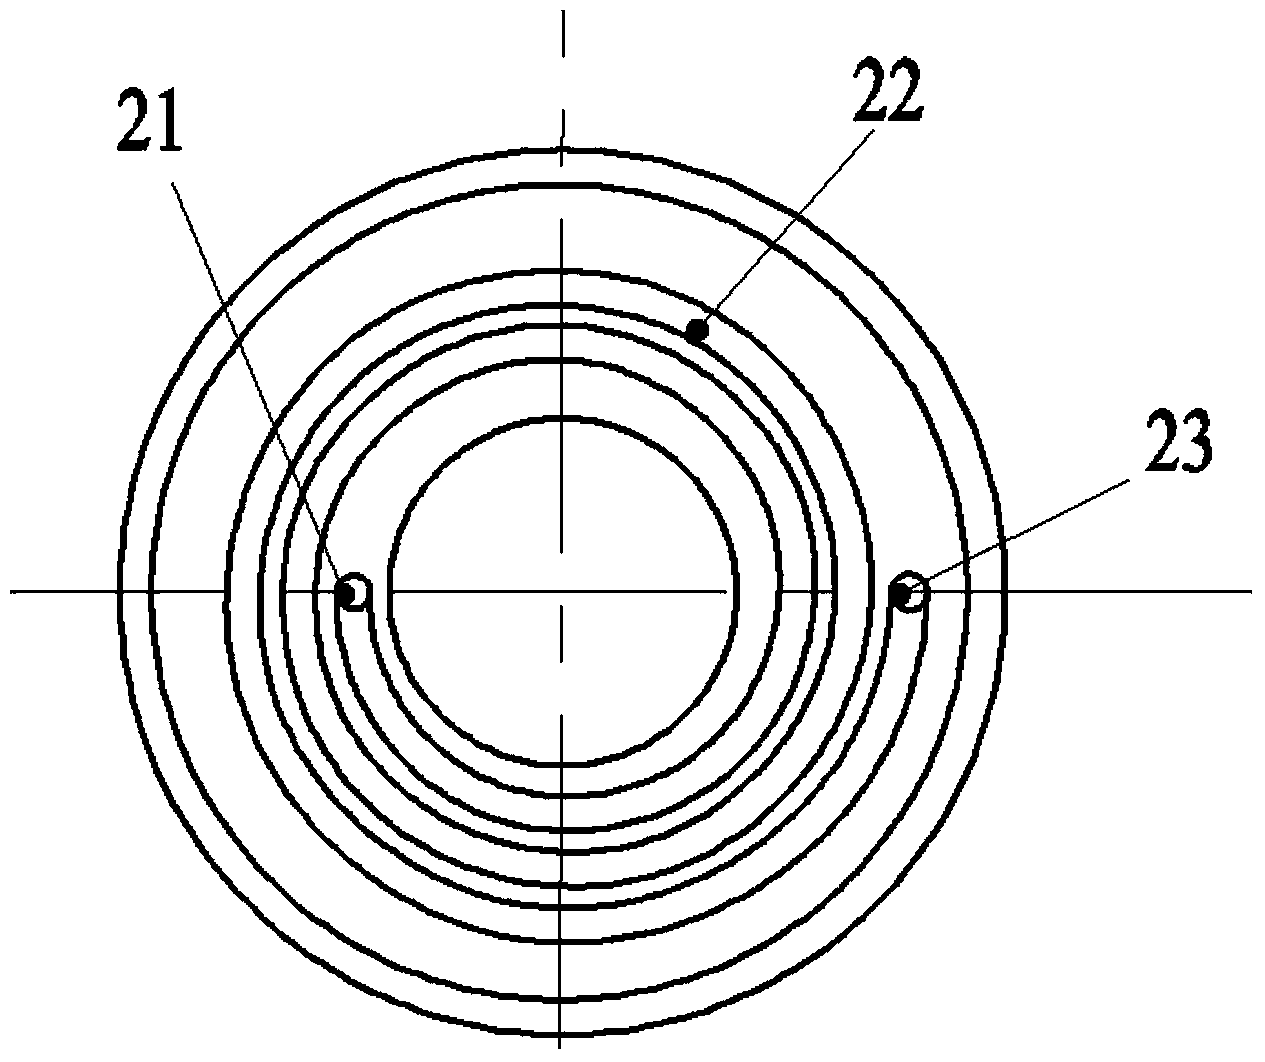 Multistage spiral magnetorheological absorber piston assembly